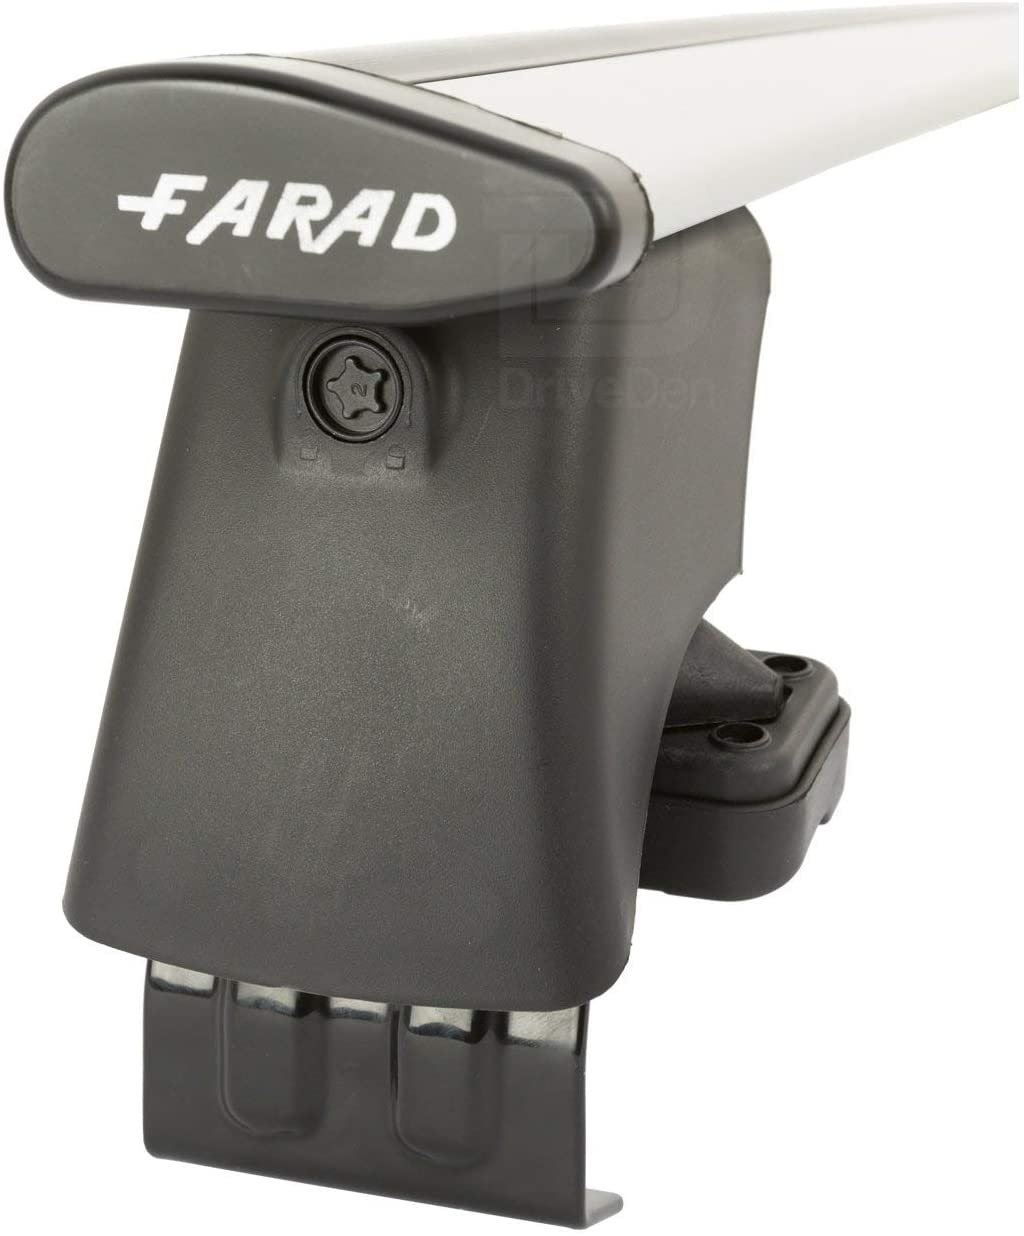 FARAD-Kit H2 per barre portatutto - Ford Ecosport 2014> (senza corrimano)